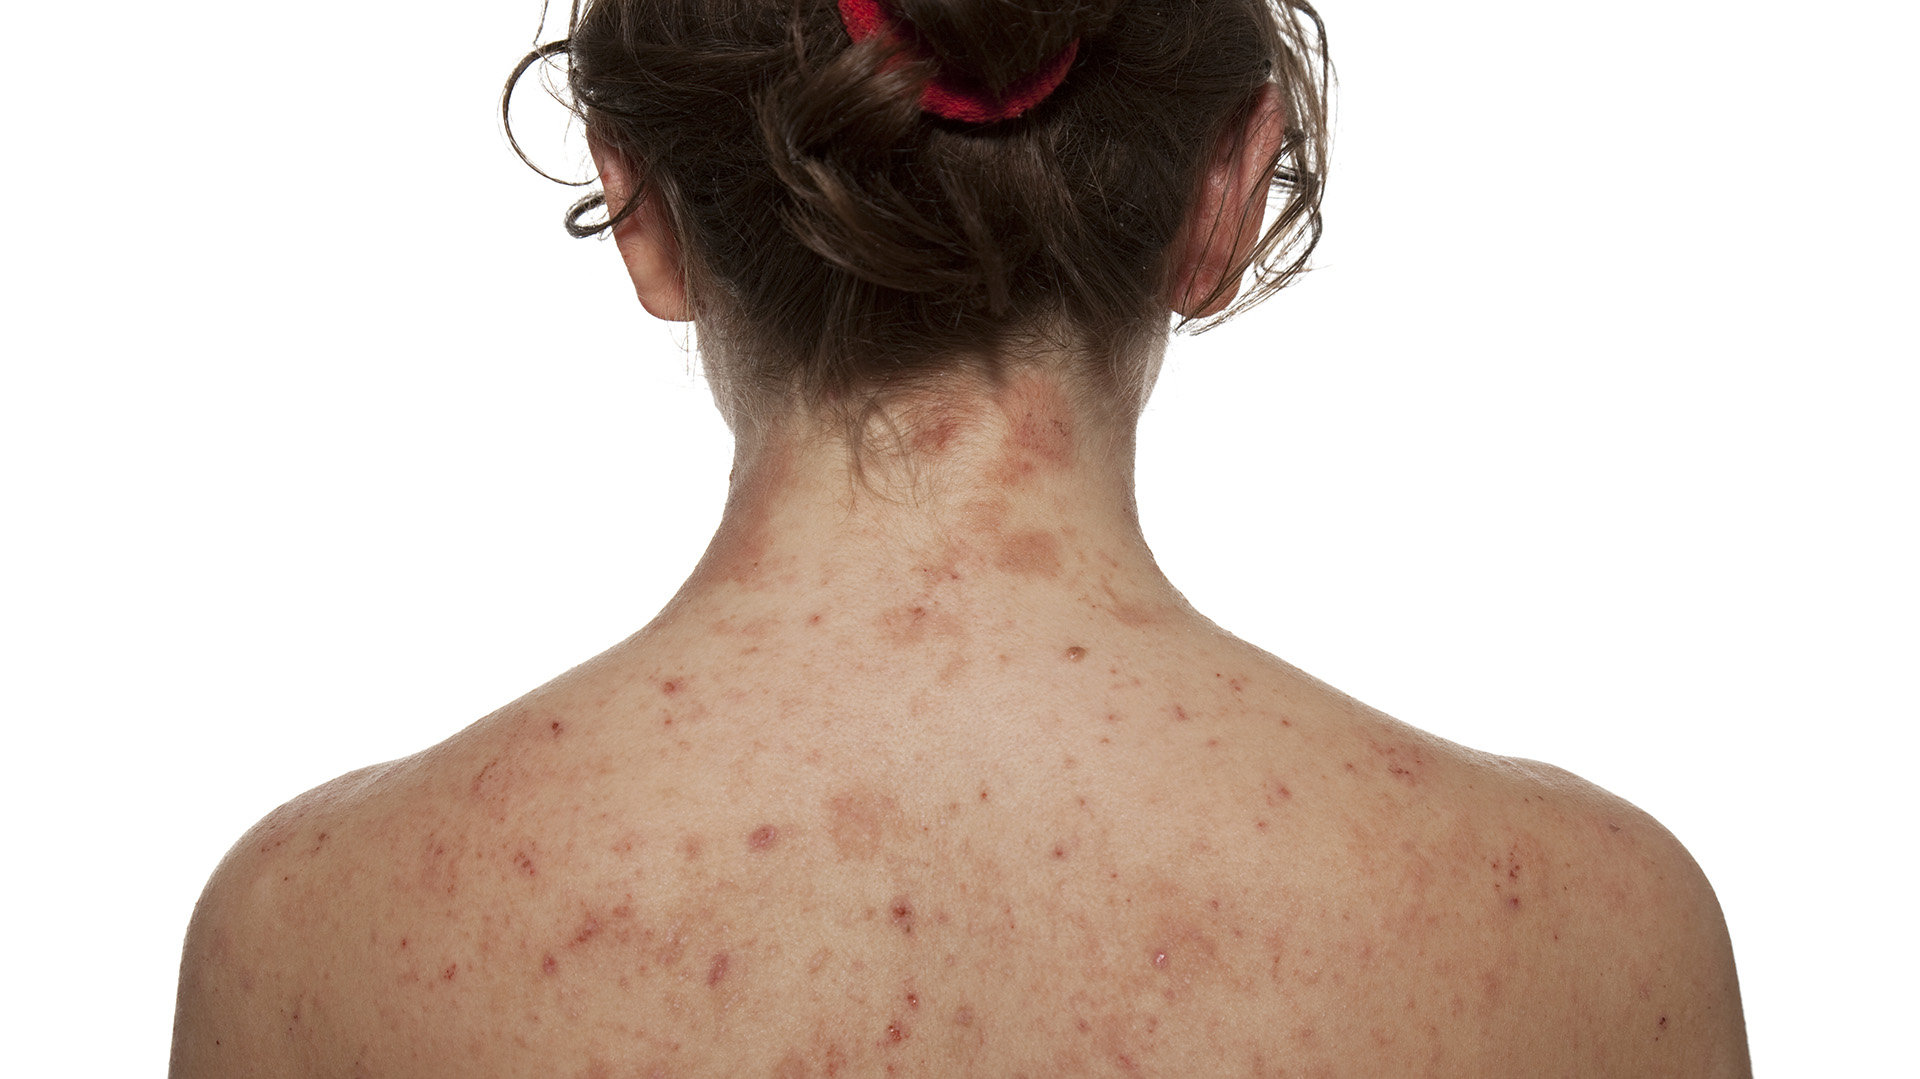 La dermatitis atópica es una condición crónica y recurrente que provoca enrojecimiento, picazón e inflamación de la piel (Getty)